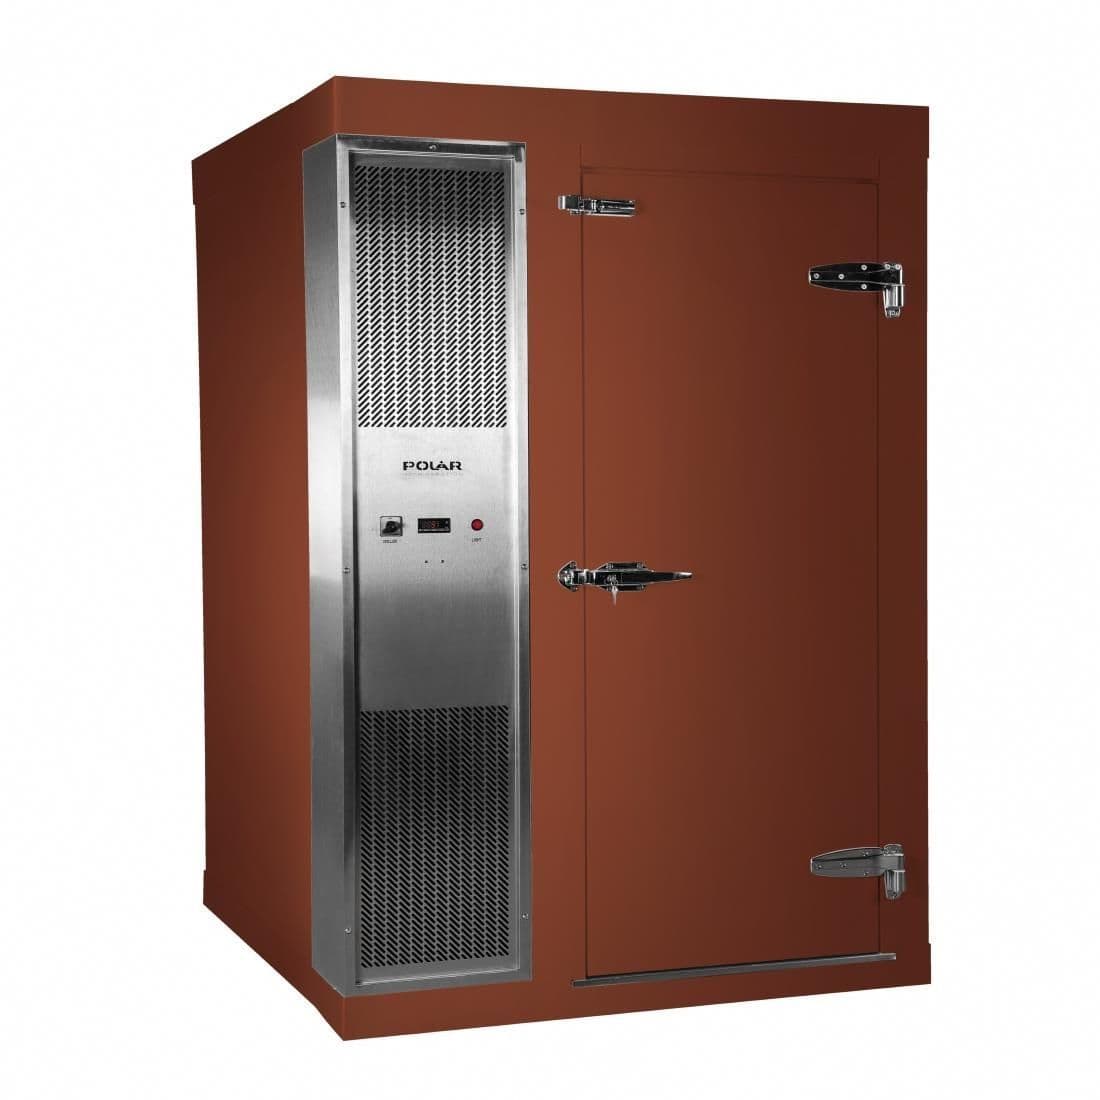 DS483-FBN Polar U-Series 1.5 x 2.1m Integral Walk In Freezer Room Brown JD Catering Equipment Solutions Ltd